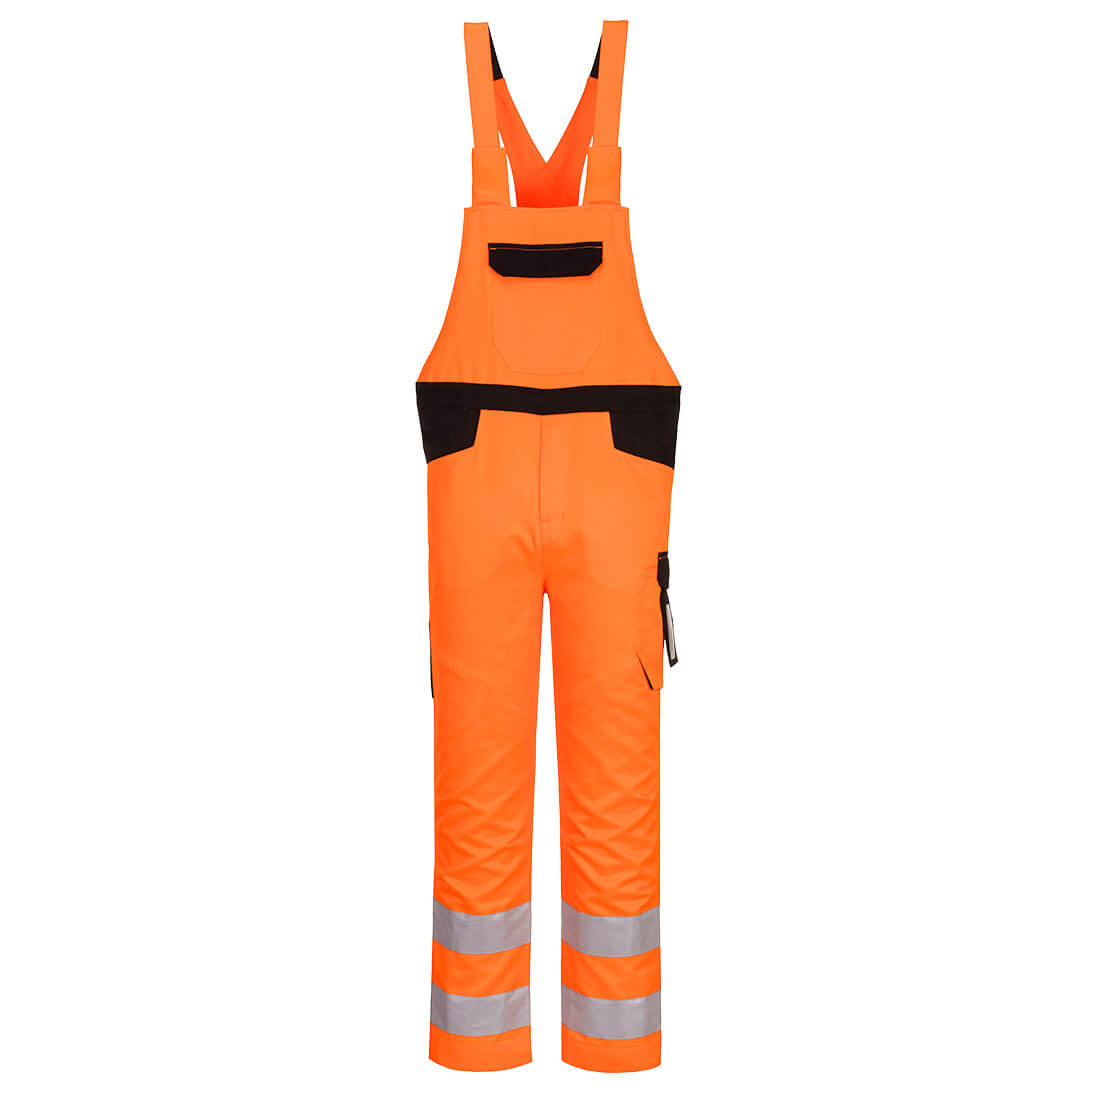 Pantaloni de protectie cu pieptar reflectorizanti portocaliu Portwest Hi-Vis Marime L dacris.net imagine 2022 depozituldepapetarie.ro